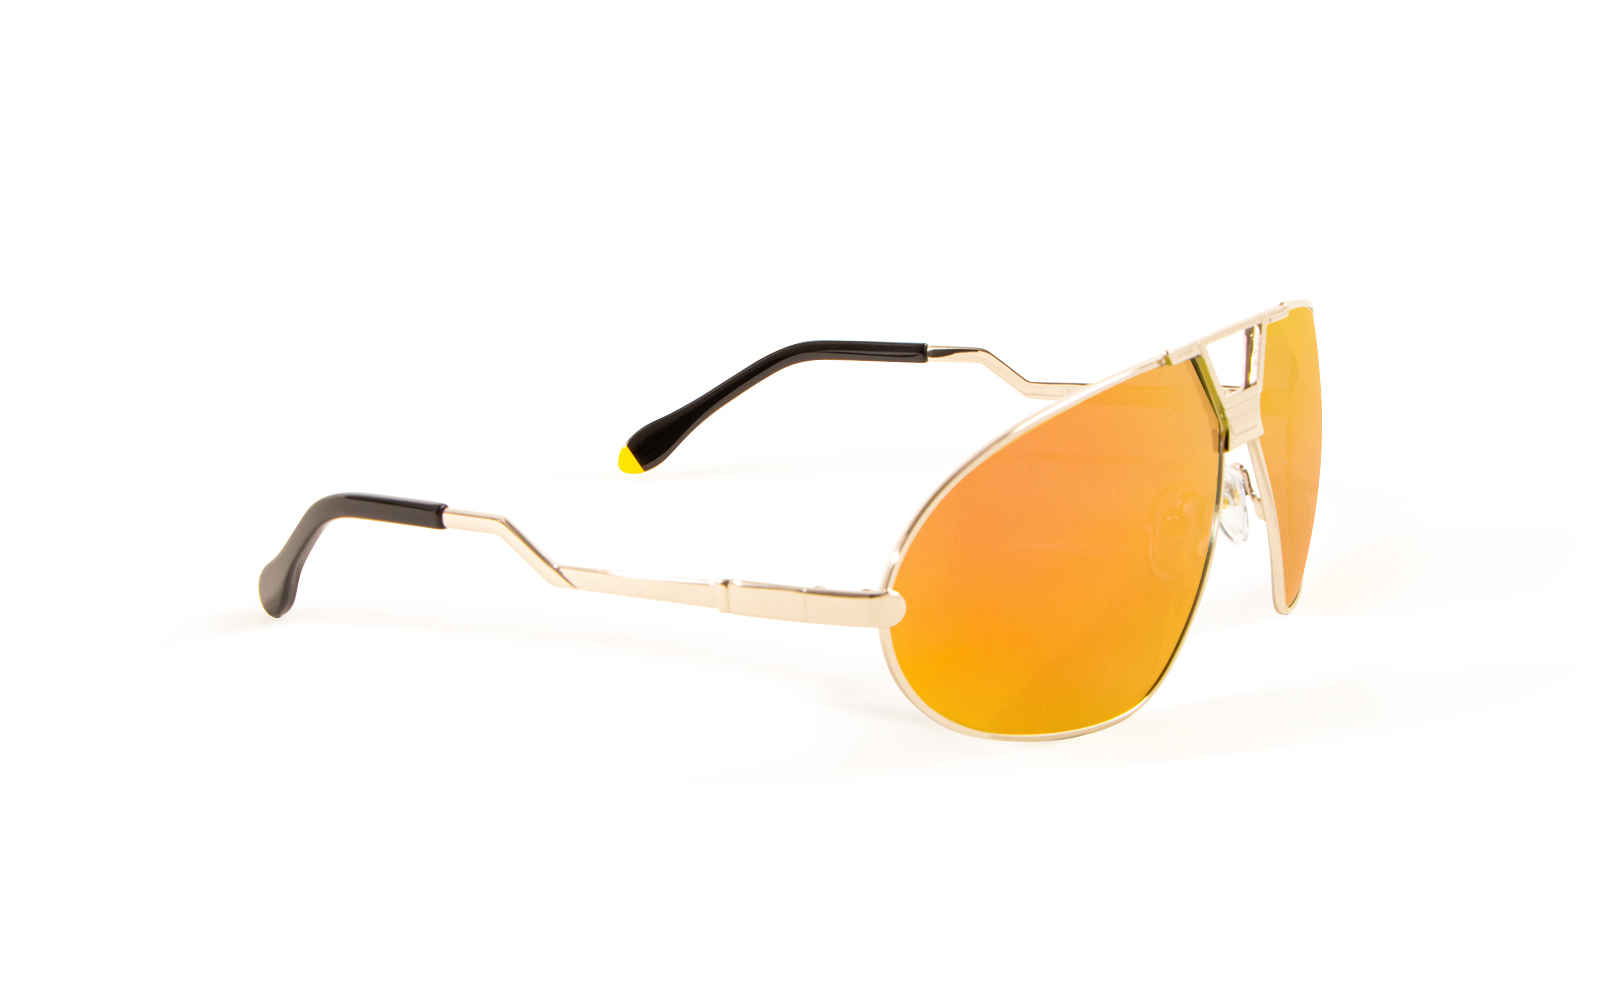 Invicta Men's Bolt Shield Sunglasses, Orange (24453-BOL-13-08)